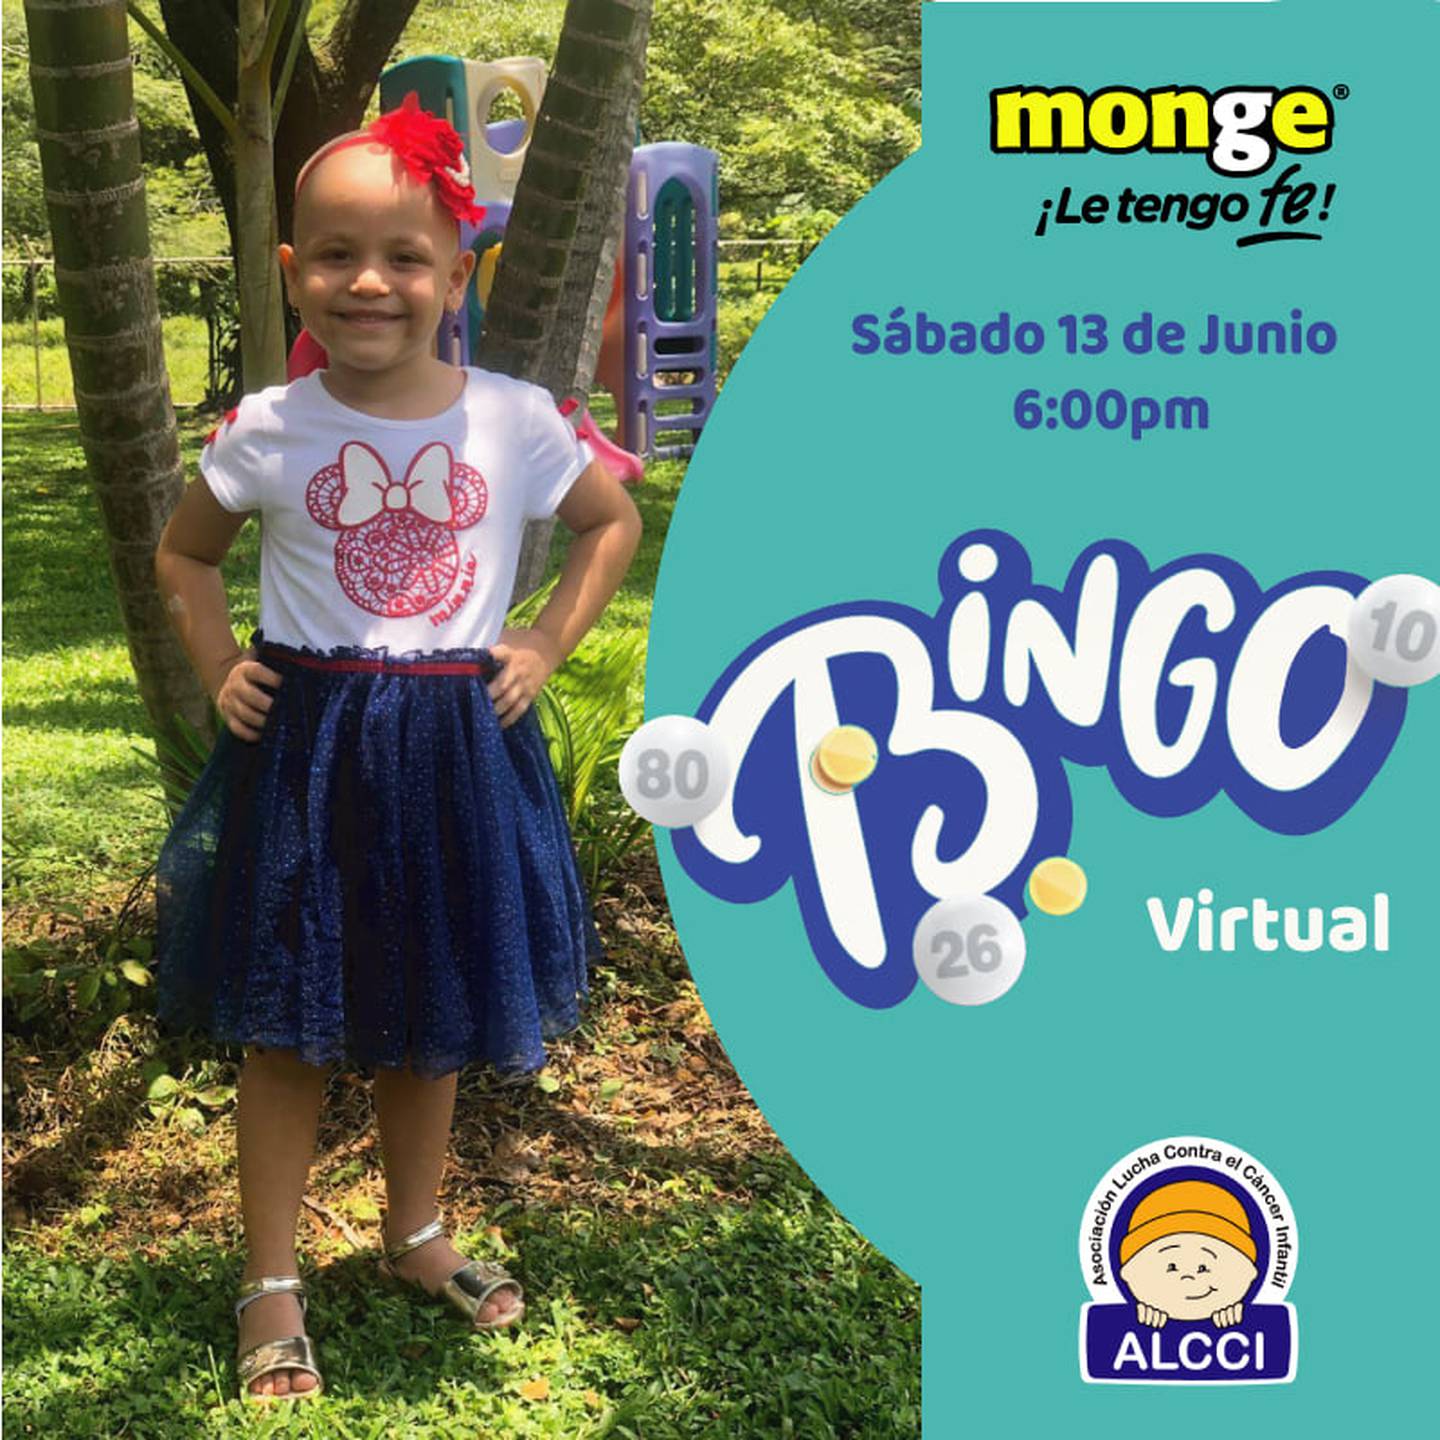 Bingo virtual ayudará a más de 600 niños con cáncer